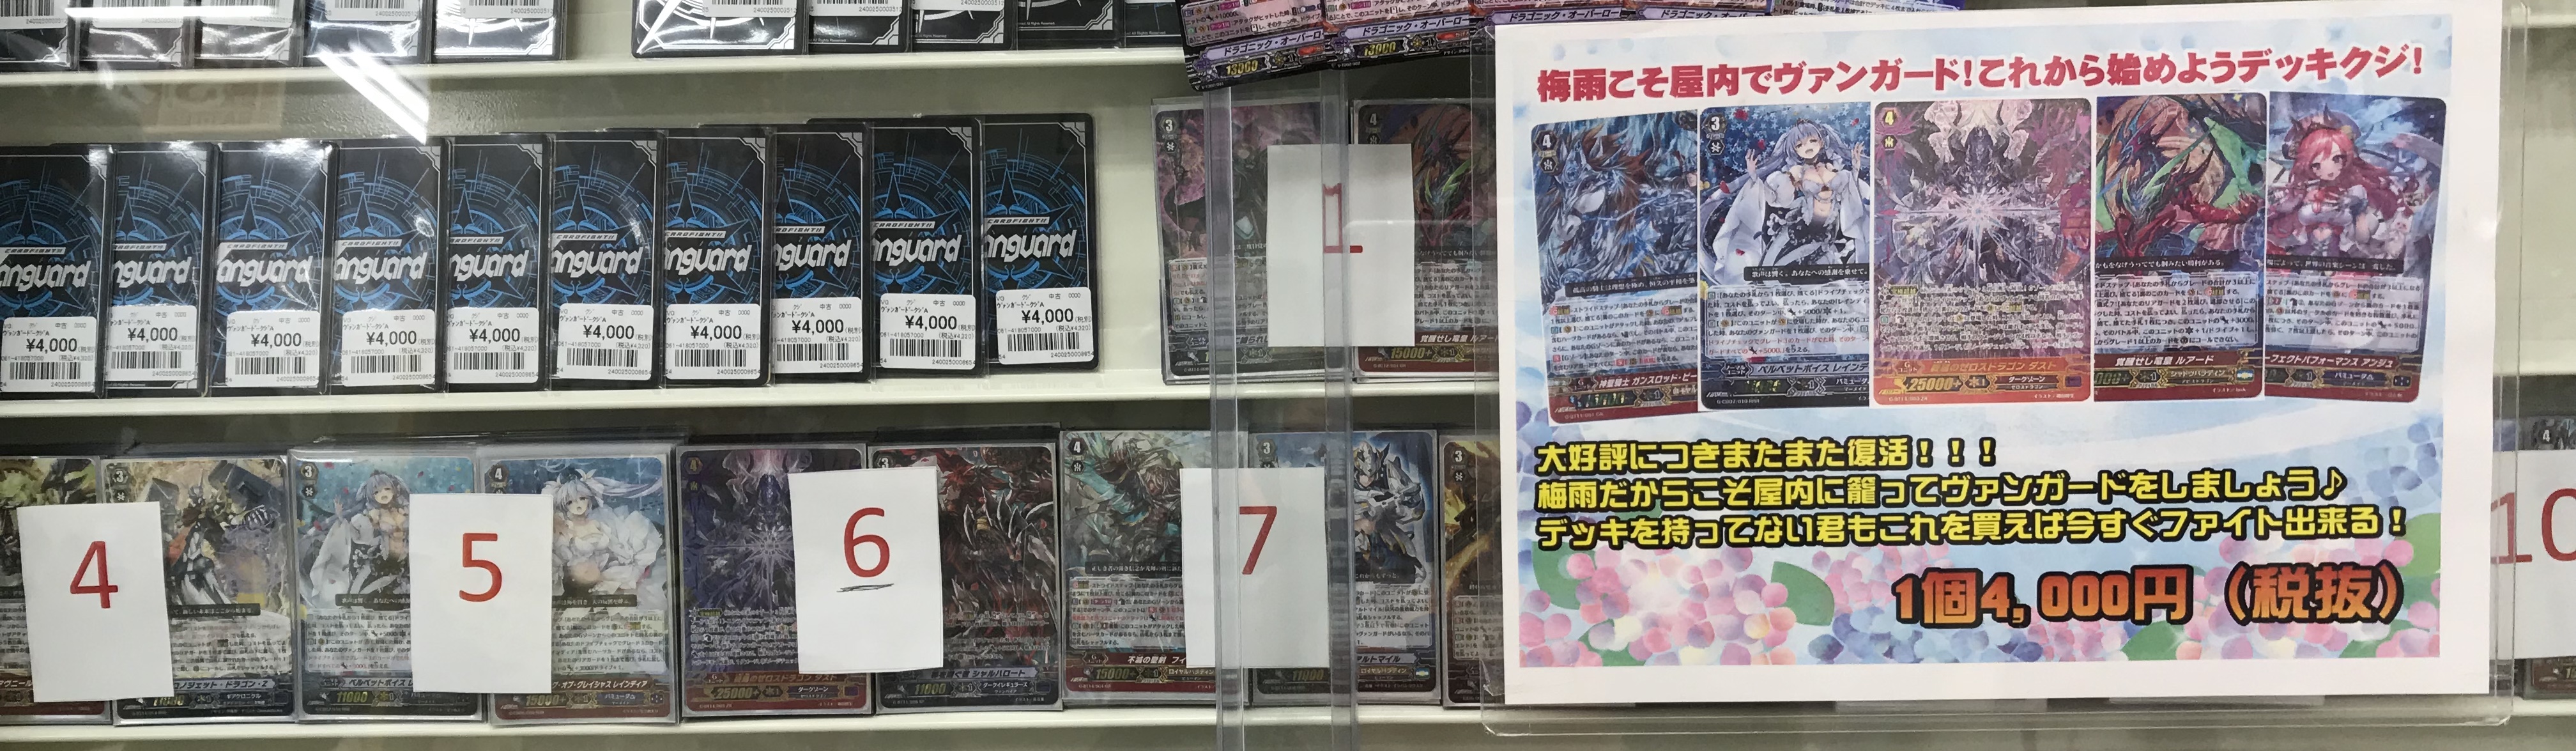 【VG】復活の声 / 新潟店の店舗ブログ - カードラボ